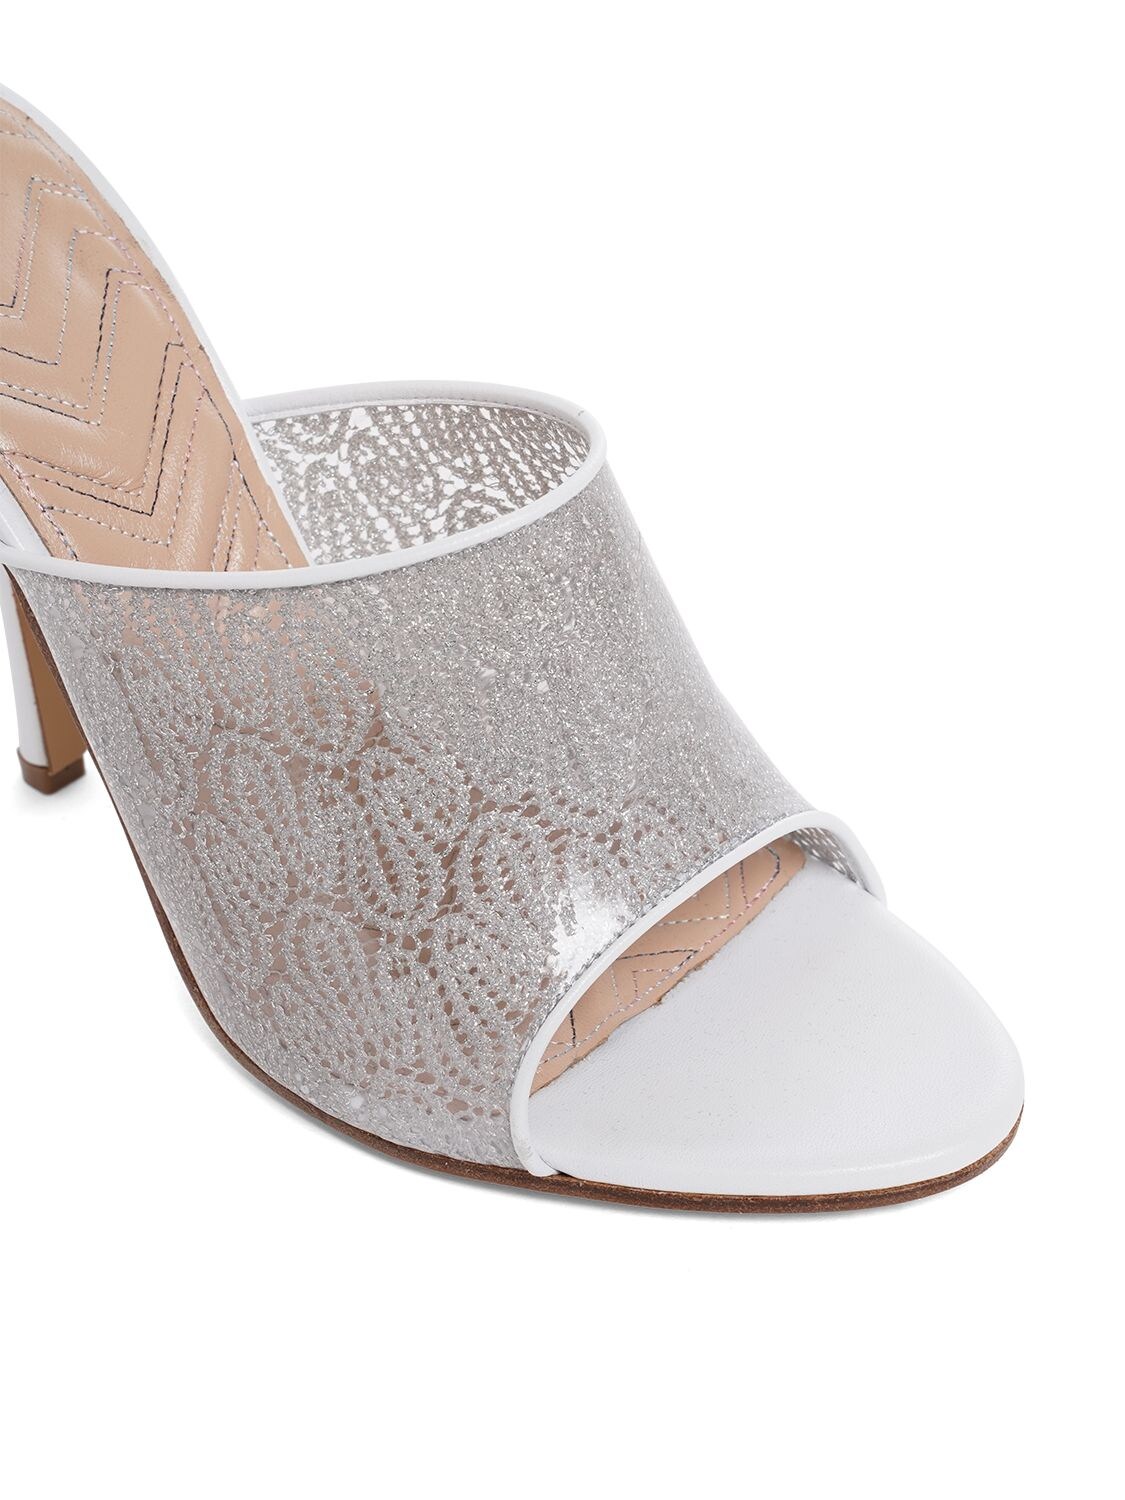 Shop Missoni 105mm Pvc & Lamé Mule Sandals In Silver